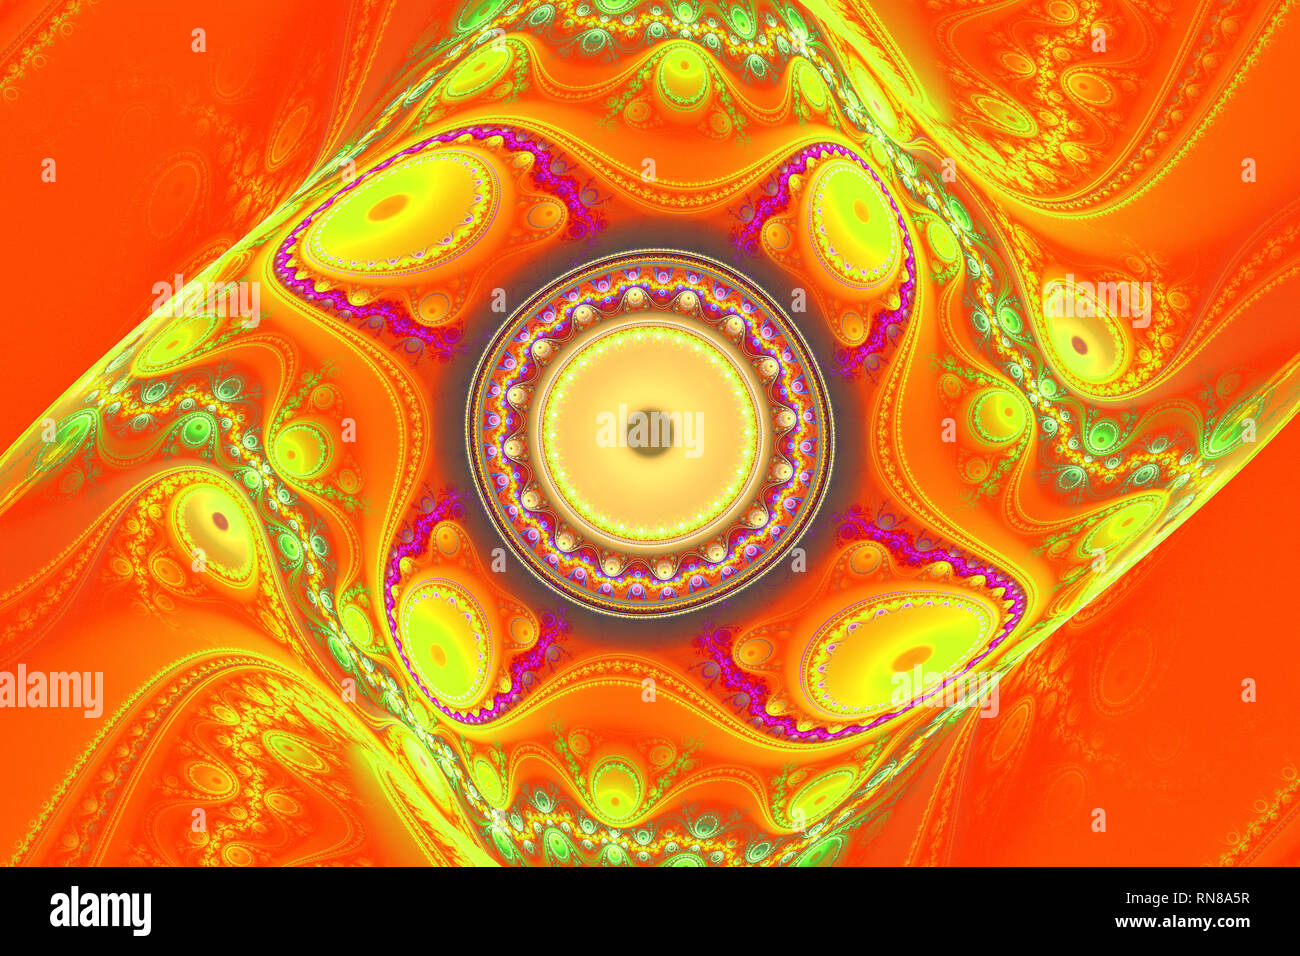 Fraktal fractal papier peint noir et des formes géométriques colorées illustrer l'univers de l'espace galaxy explosion fréquence magique ou galaxies. Banque D'Images